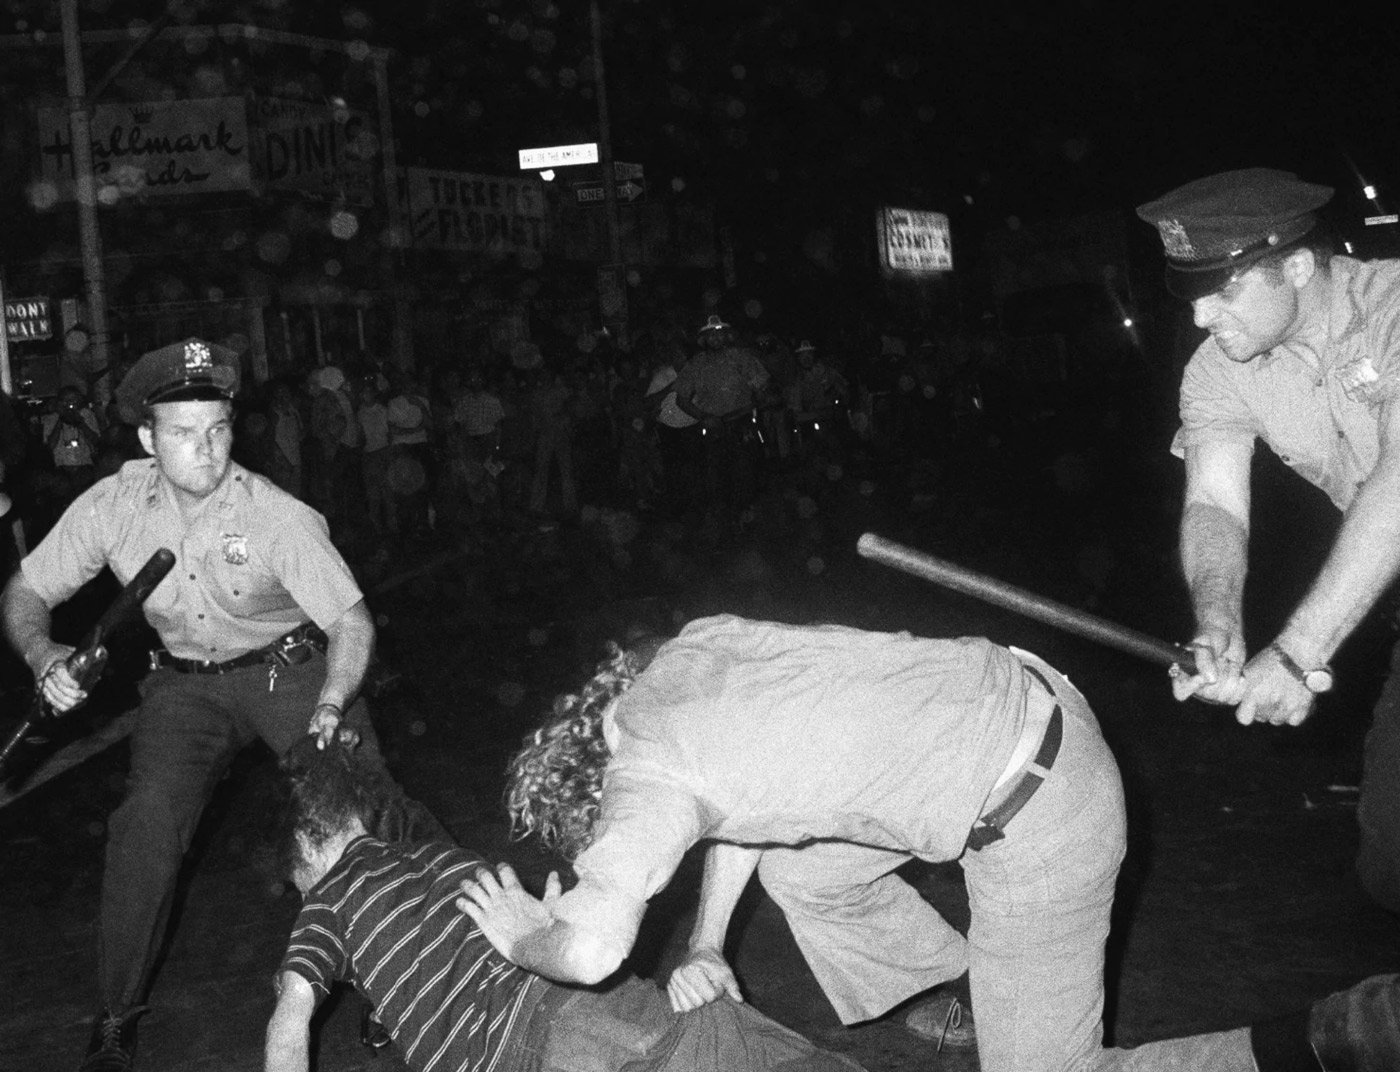 A polícia batendo em jovens gays era comum. O que havia de novo era o revidar. (Fonte: Crimethinc/ Reprodução)